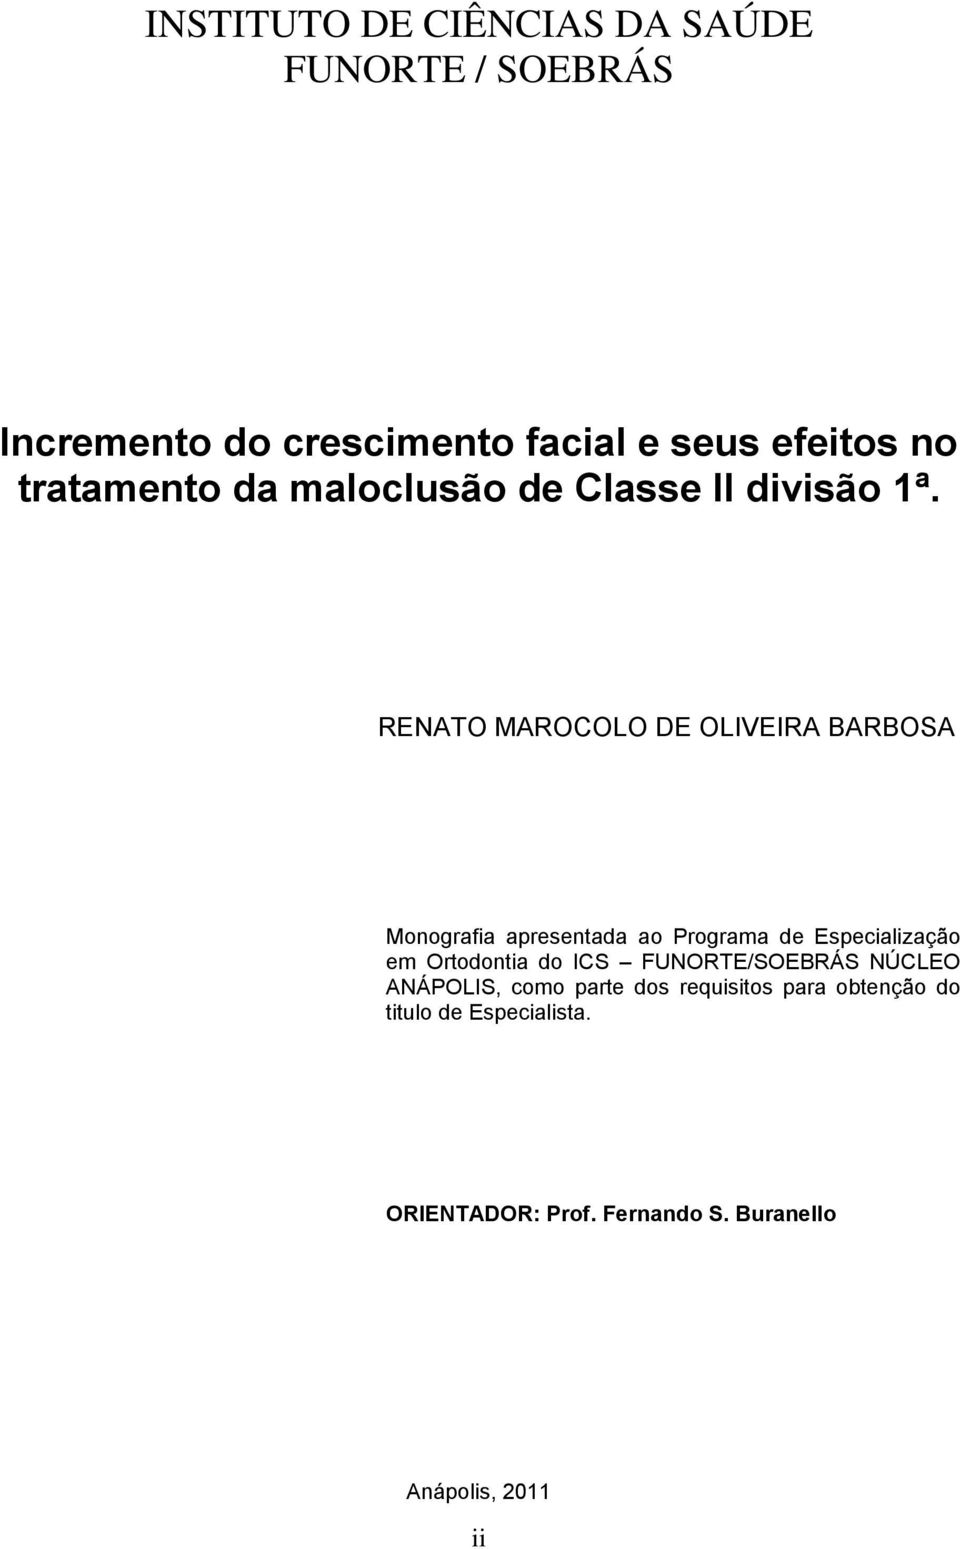 RENATO MAROCOLO DE OLIVEIRA BARBOSA Monografia apresentada ao Programa de Especialização em Ortodontia